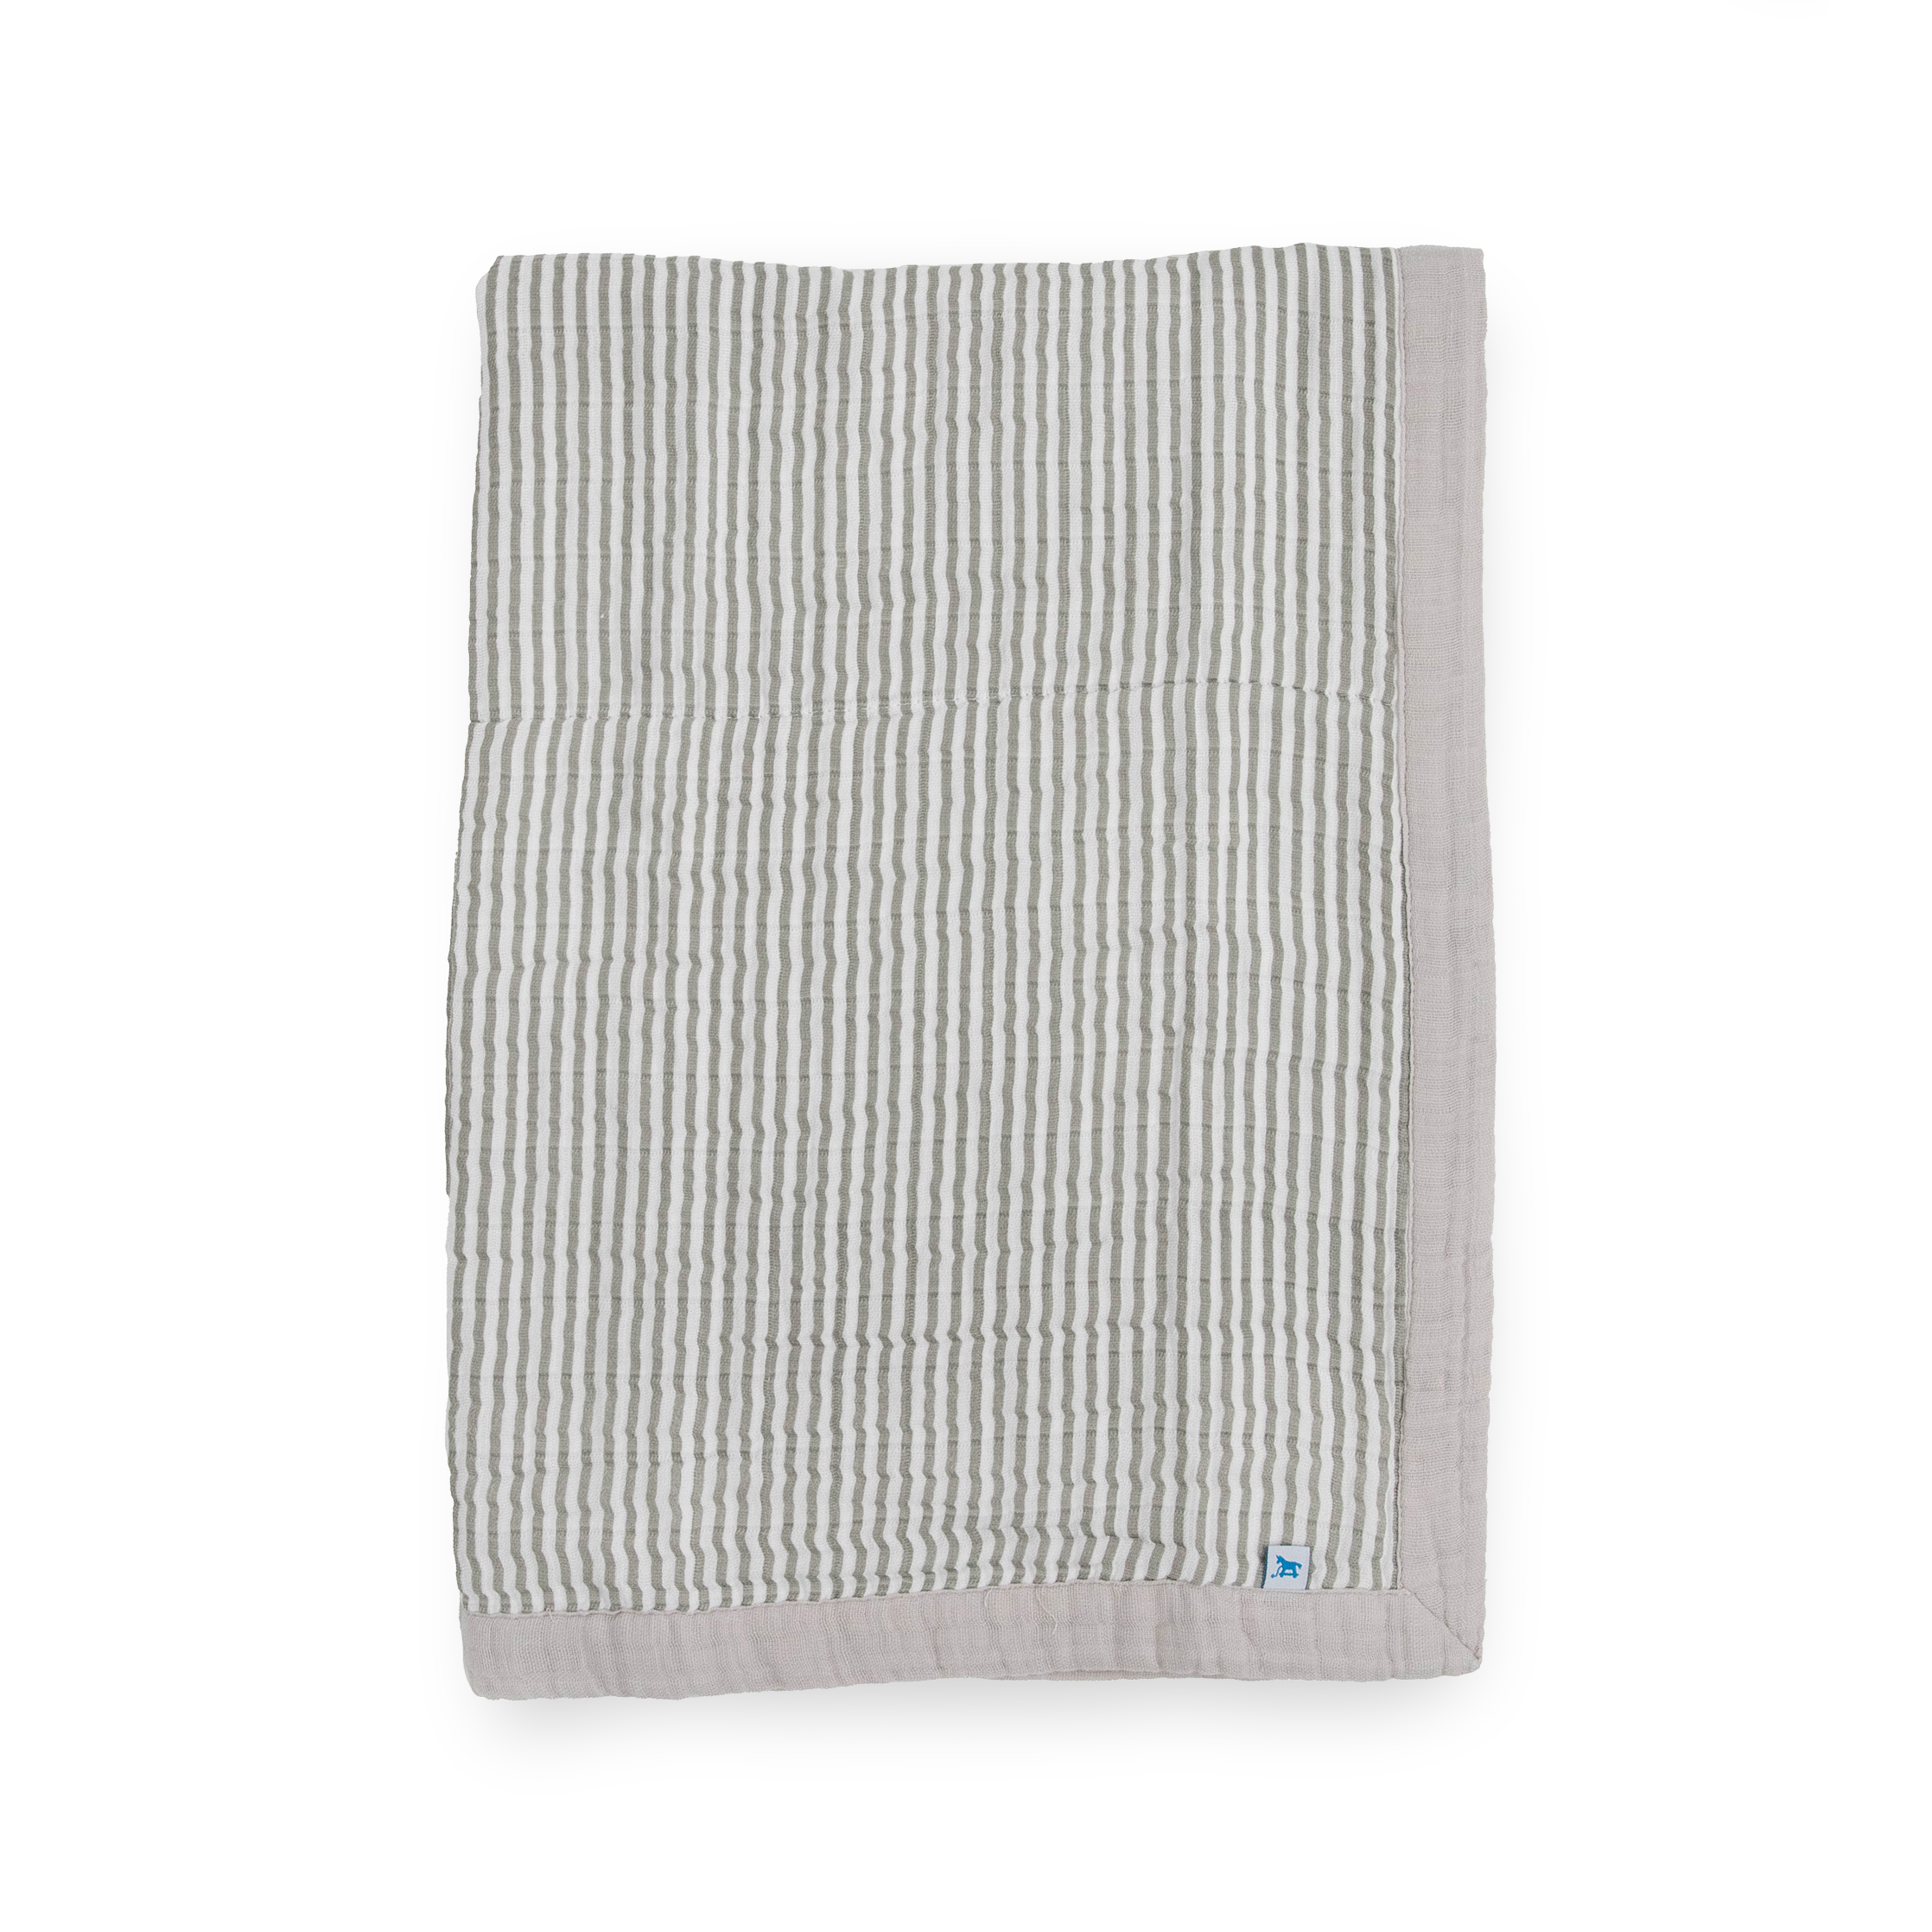 Cotton Muslin Baby Quilt - Grey Stripe